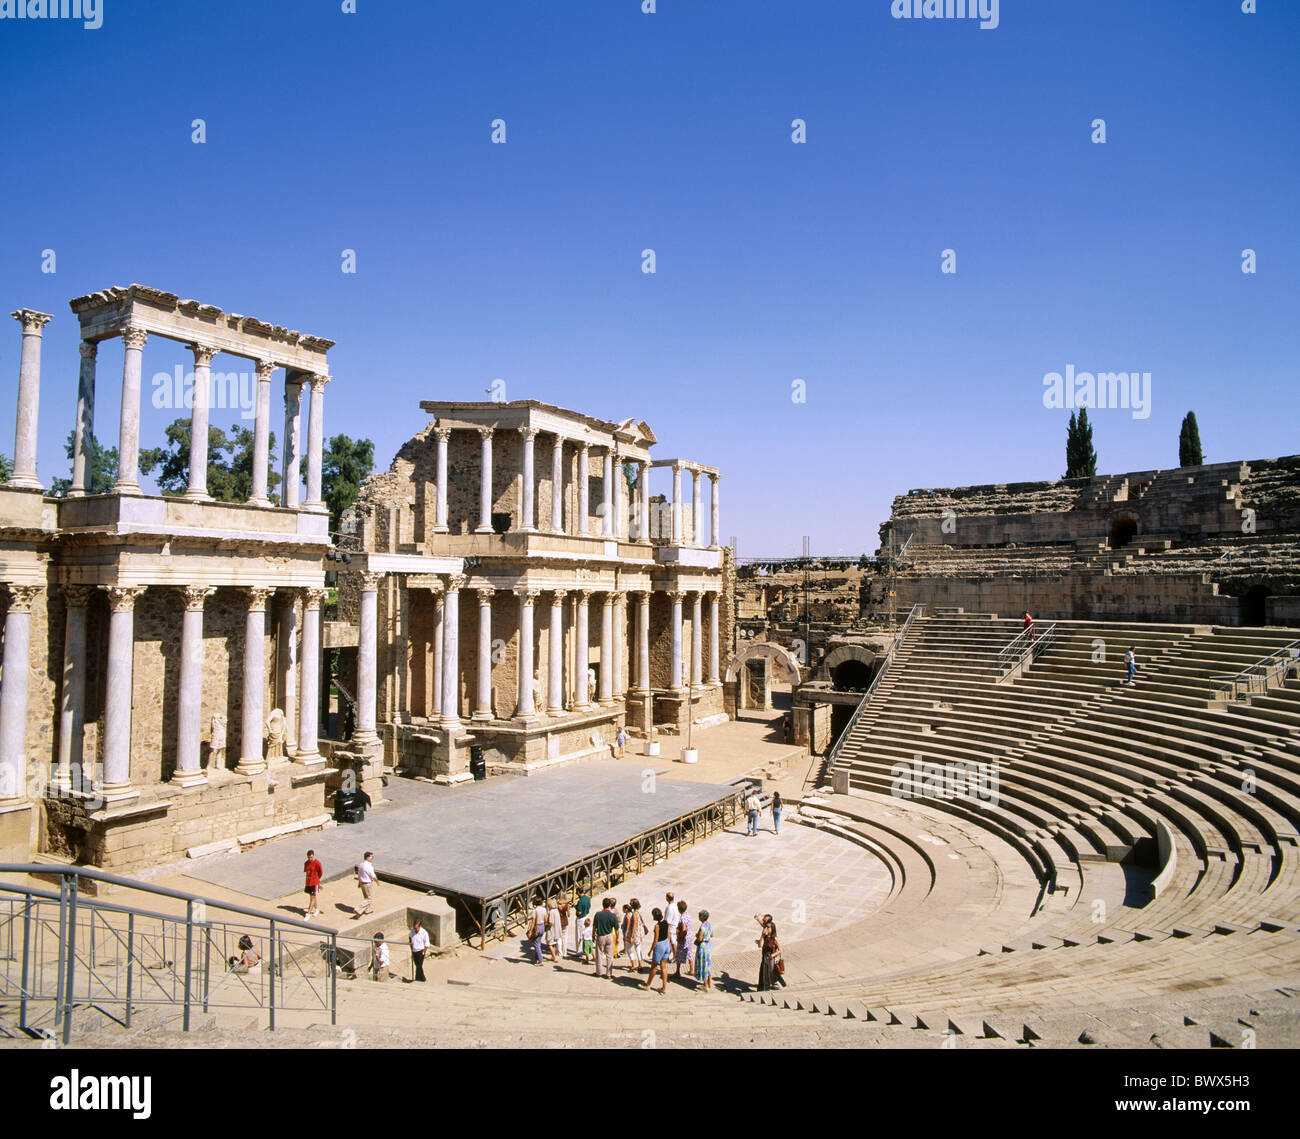 La culture de l'amphithéâtre antique antiquité romaine antiquité vestiges romains de Mérida Espagne Europe Espagne Europe Banque D'Images